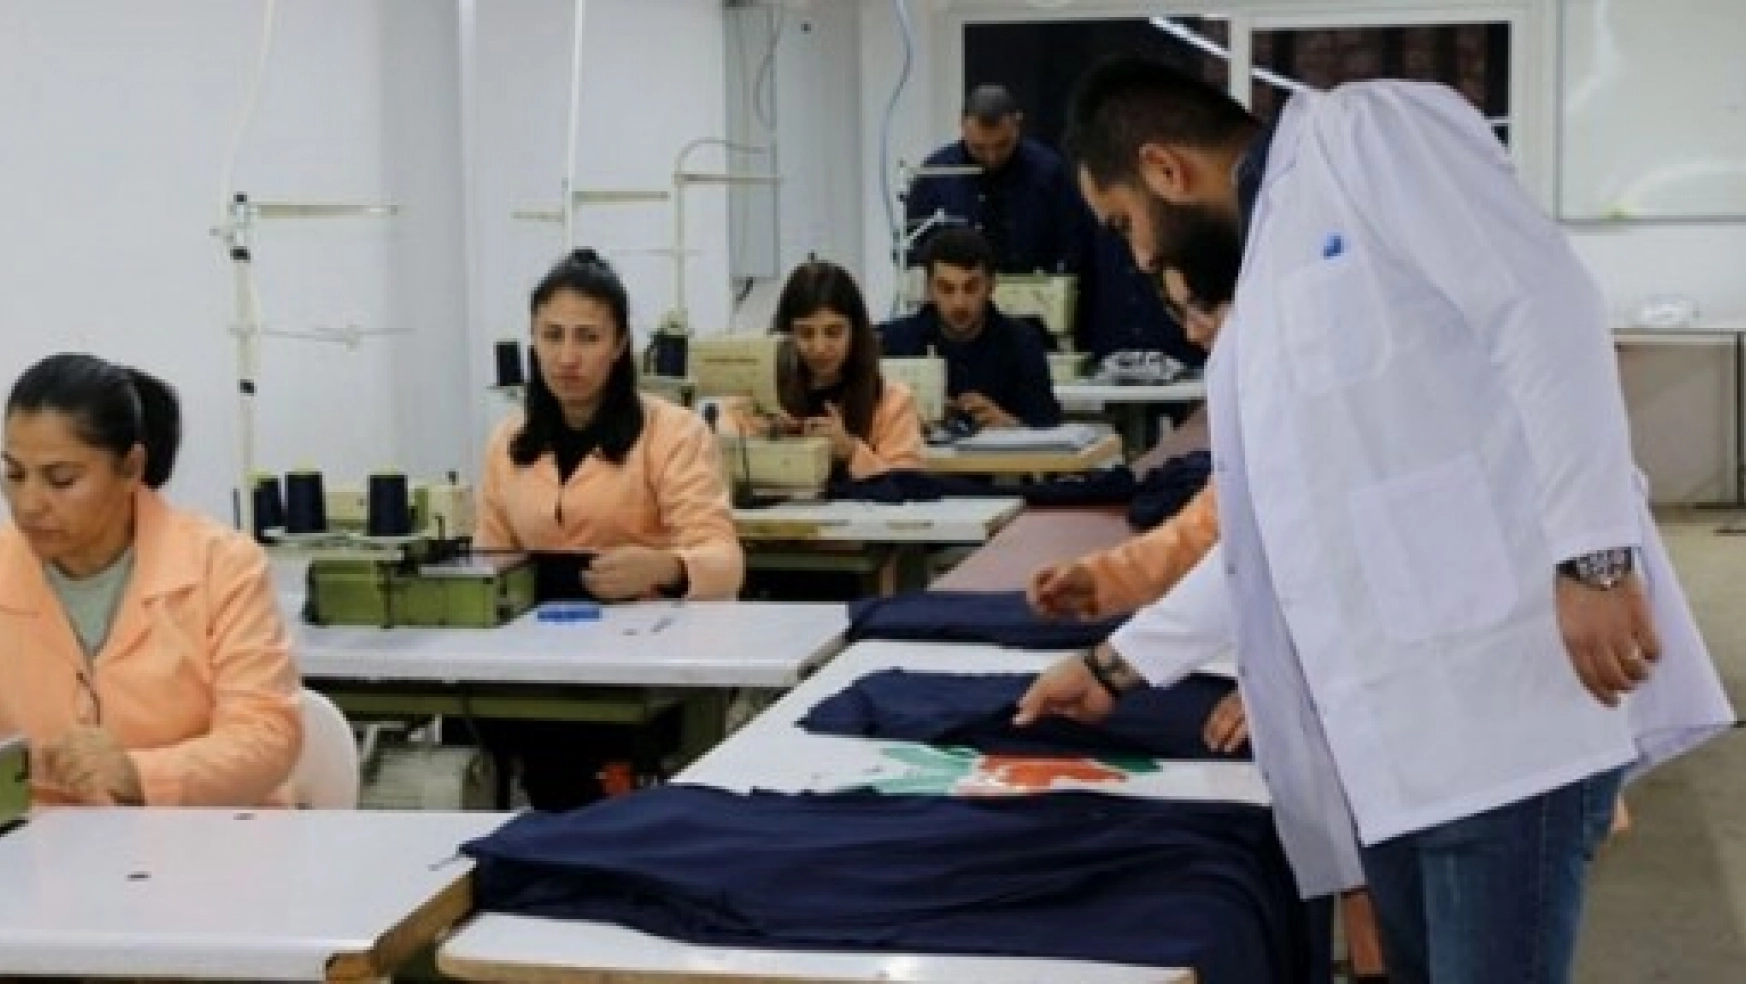 Hekimhan'da Tekstil Fabrikası Açıldı